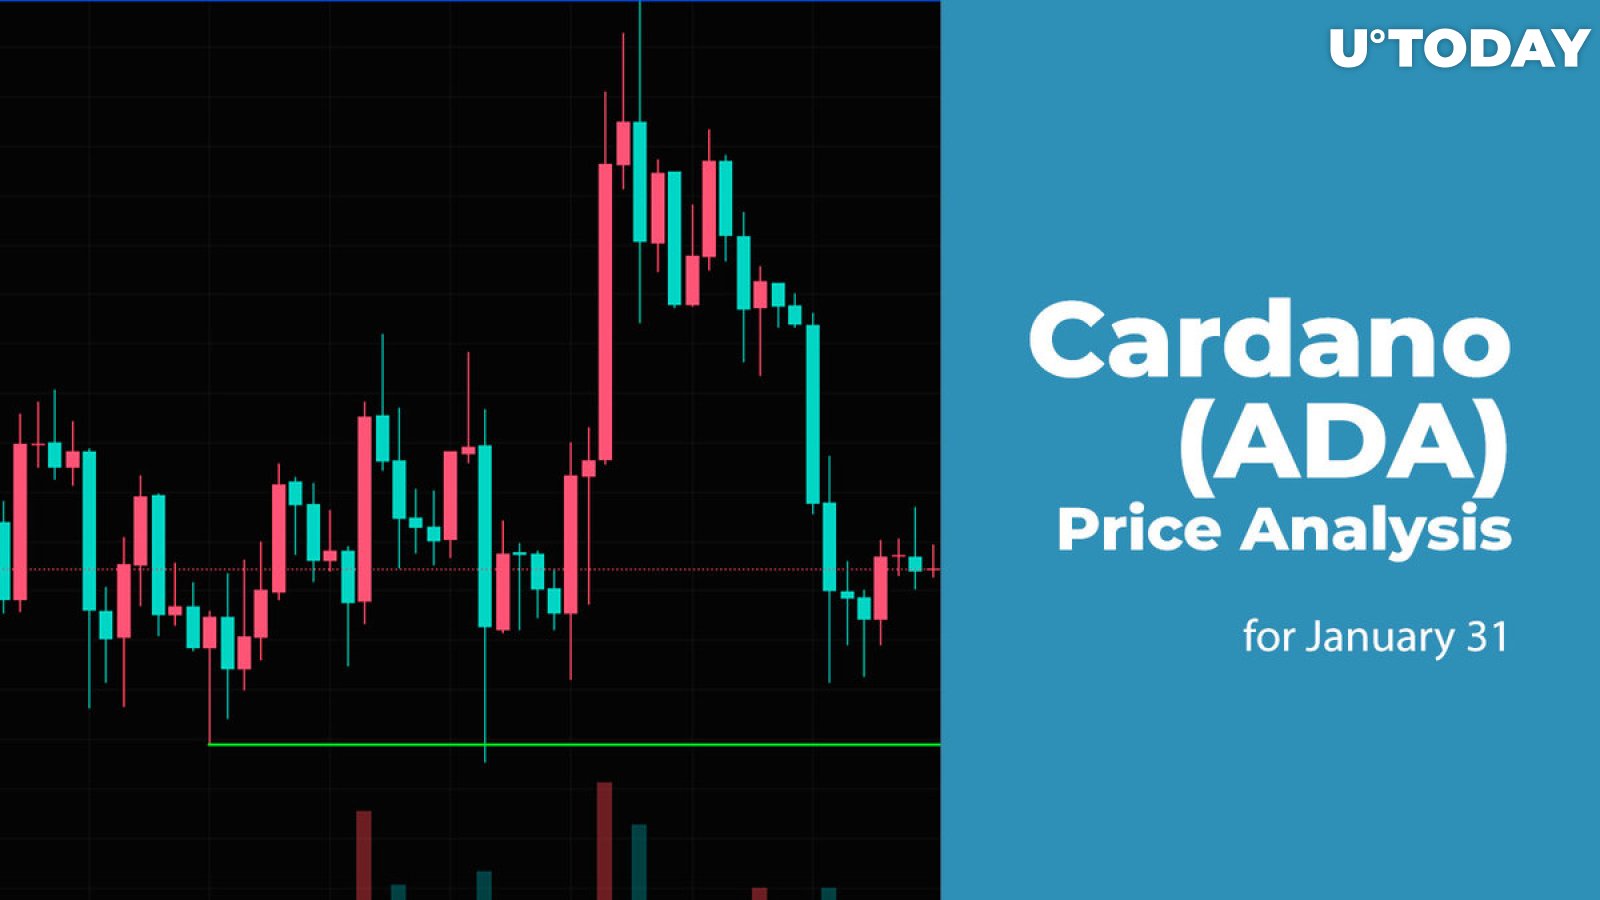 Cardano (ADA) Price Analysis for January 31